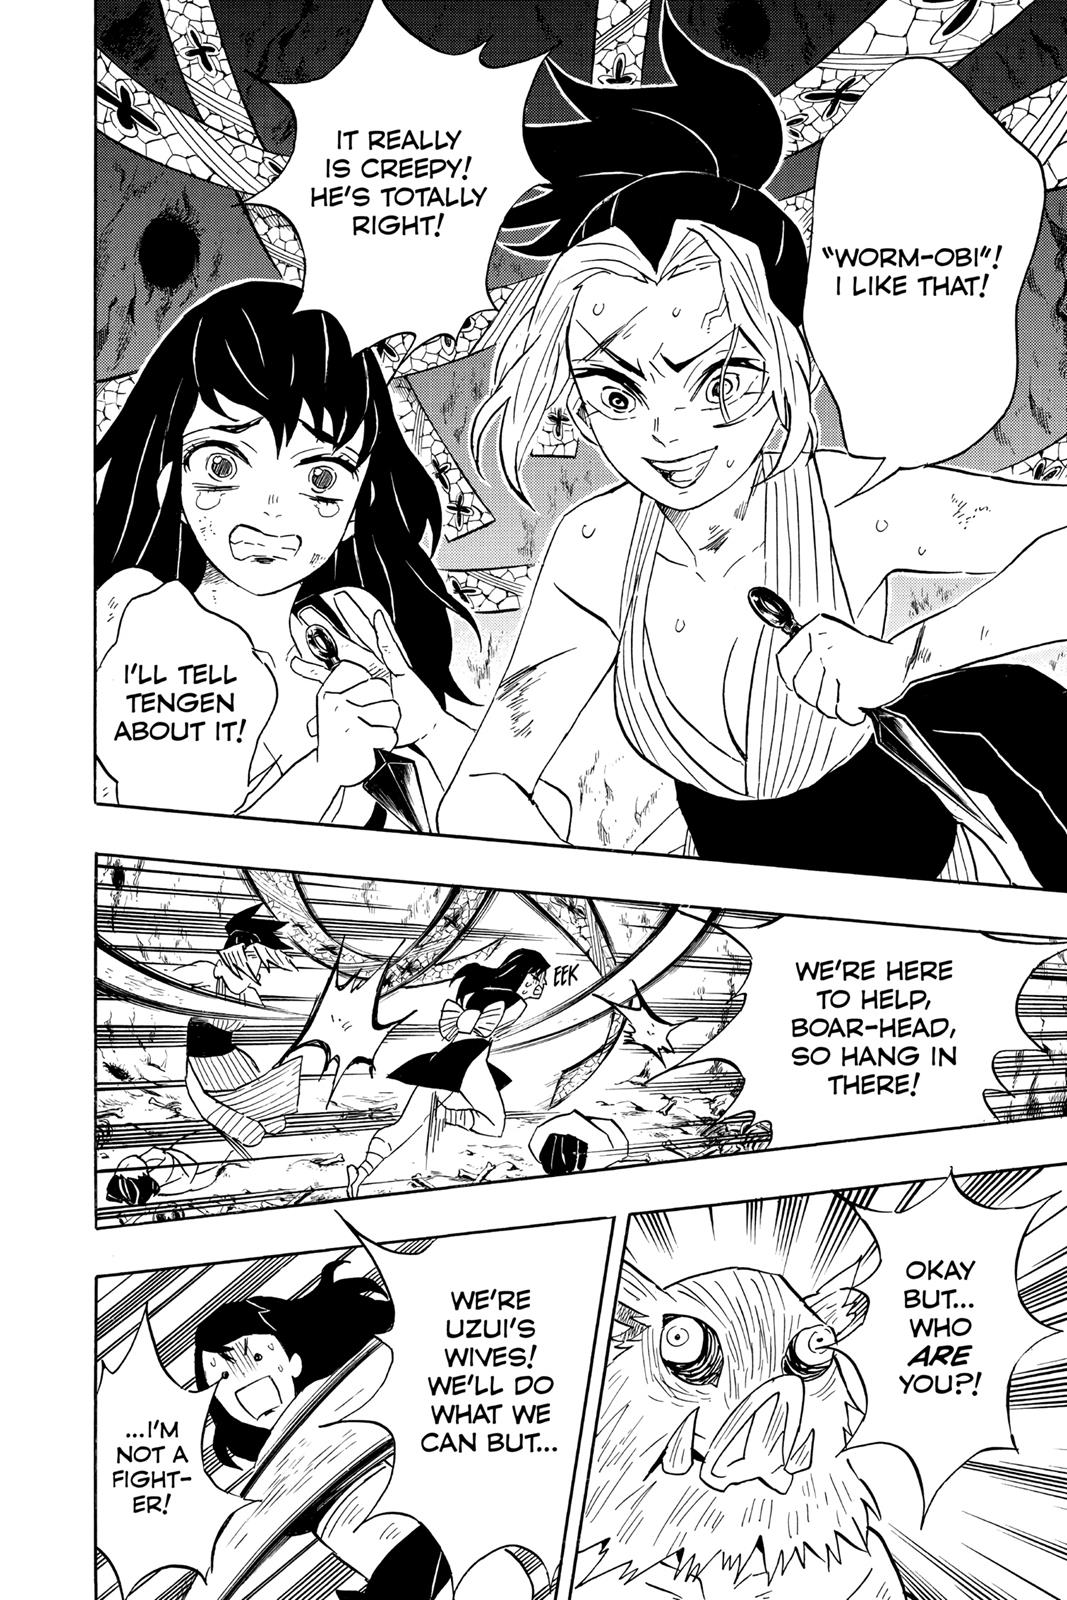 Demon Slayer Manga Manga Chapter - 79 - image 9